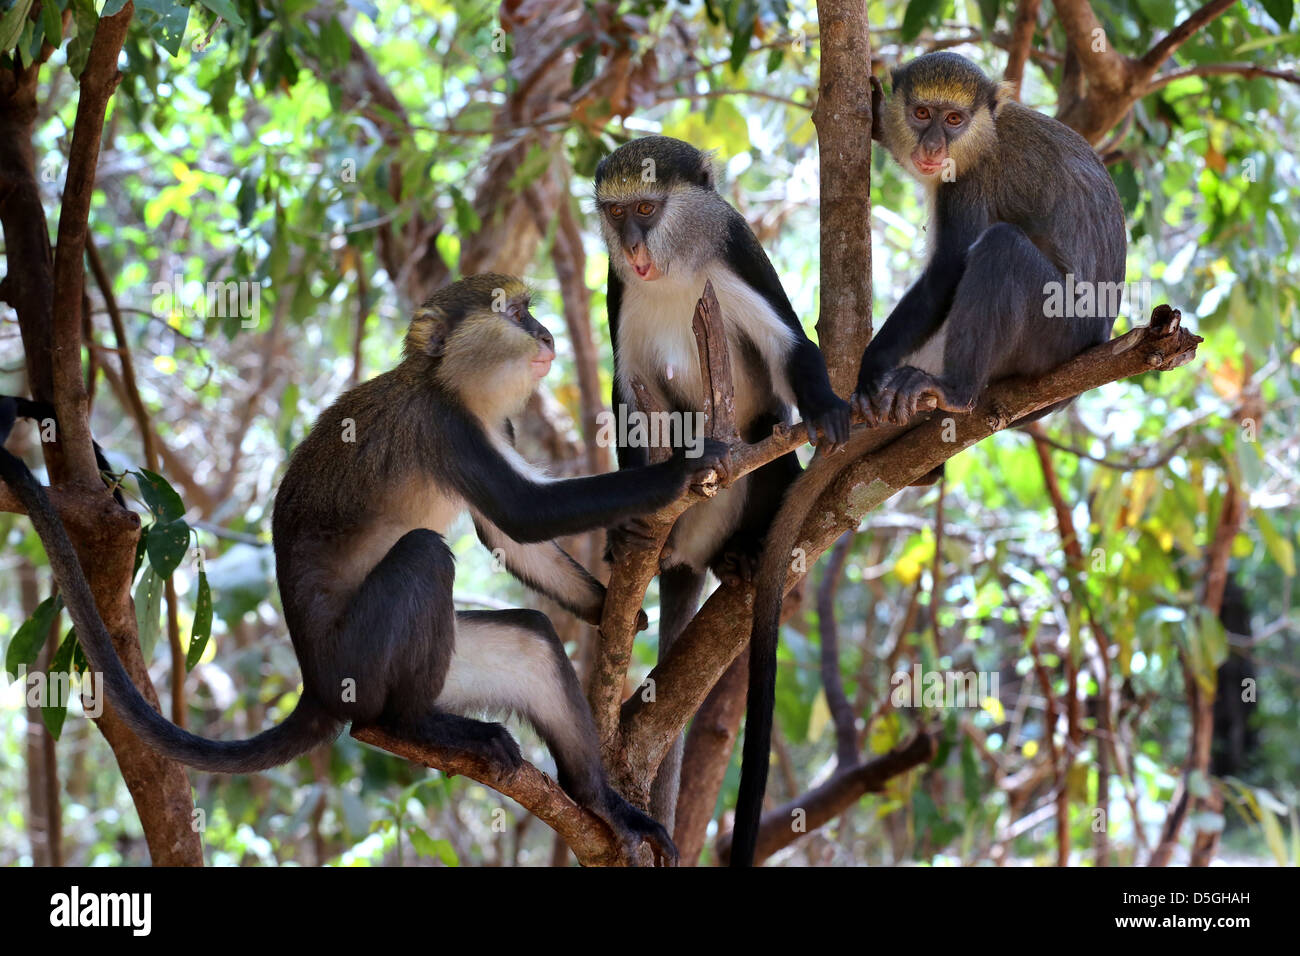 sacred Mona monkeys of the Boabeng Fema Monkey Sanctuary, Ghana Stock Photo